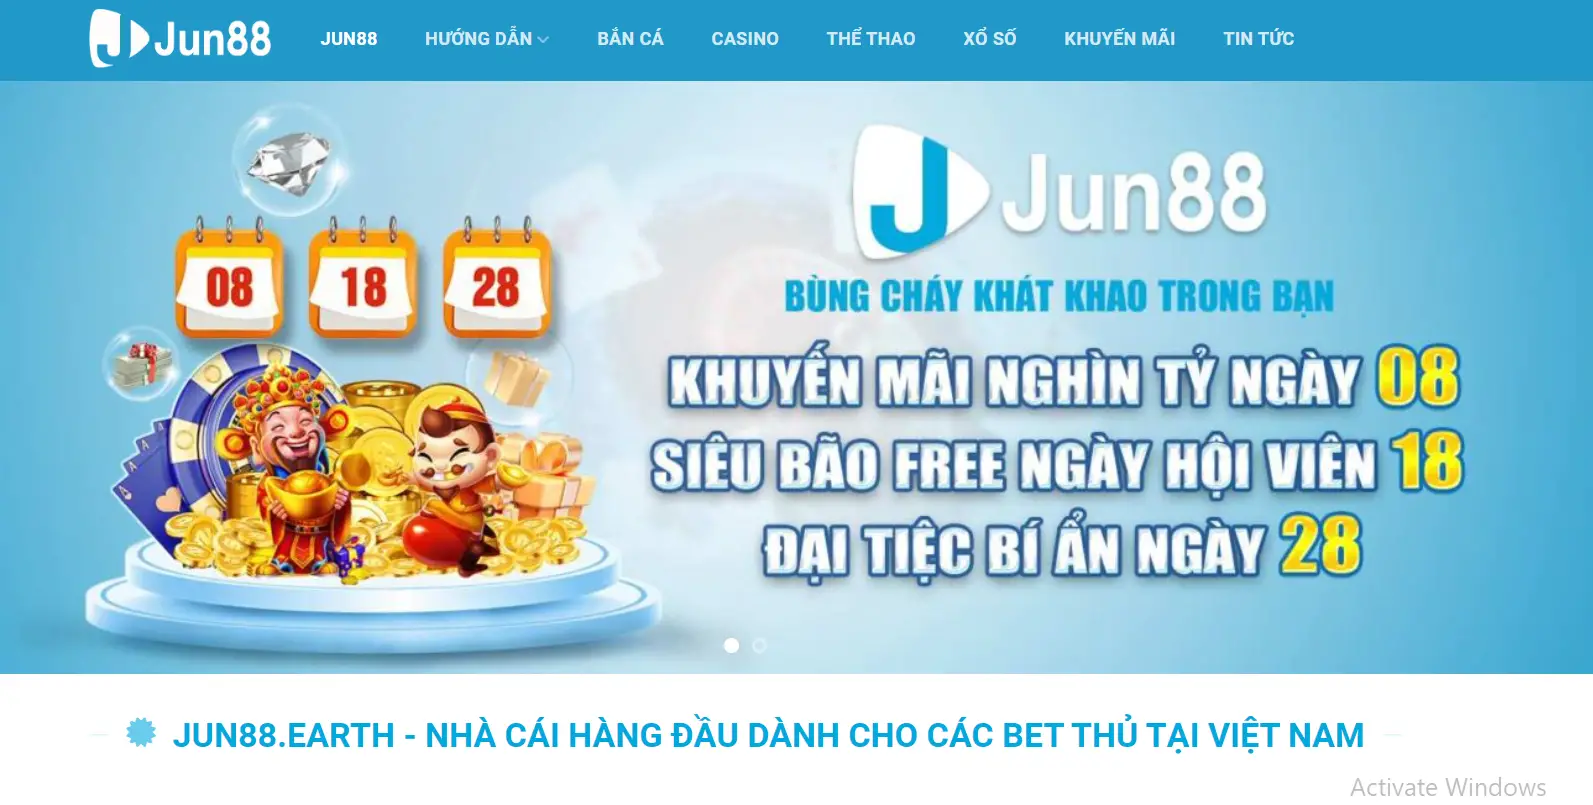 Nhận Biết Trang Web Jun88 Giả Mạo - Cách Phân Biệt Trang Web Uy Tín